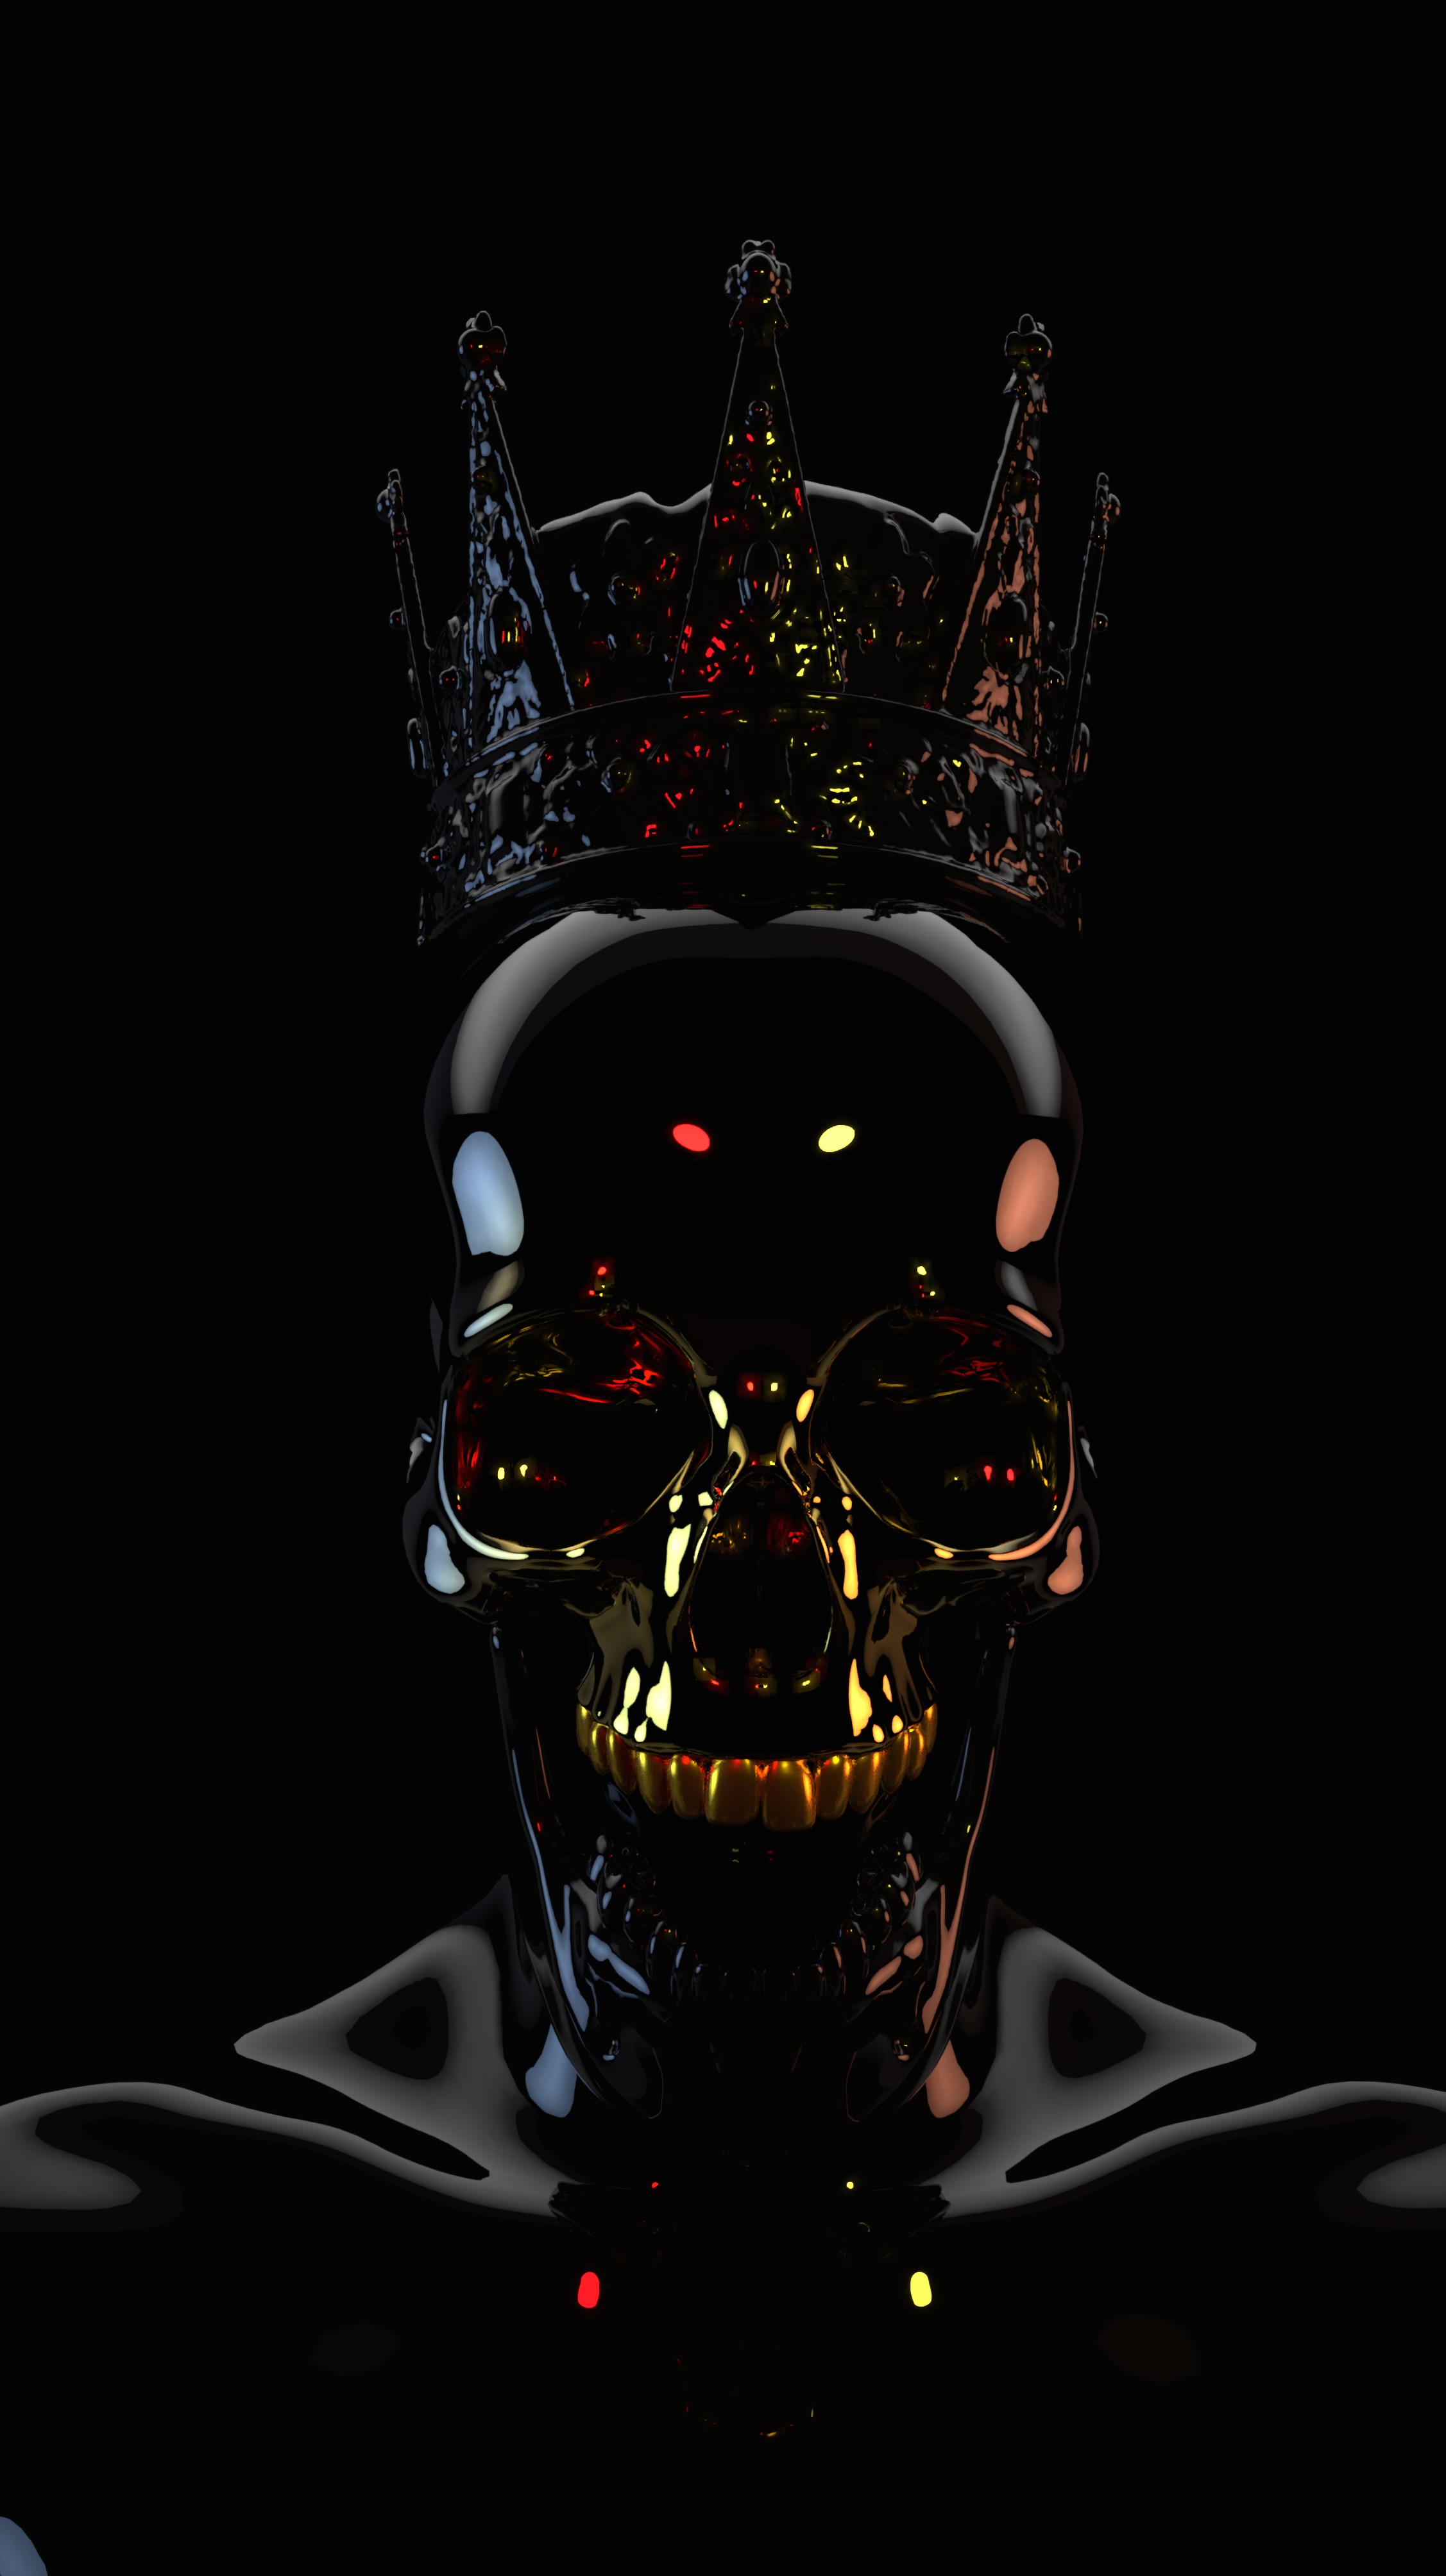 3d, dark, black, skull, crown mobile wallpaper